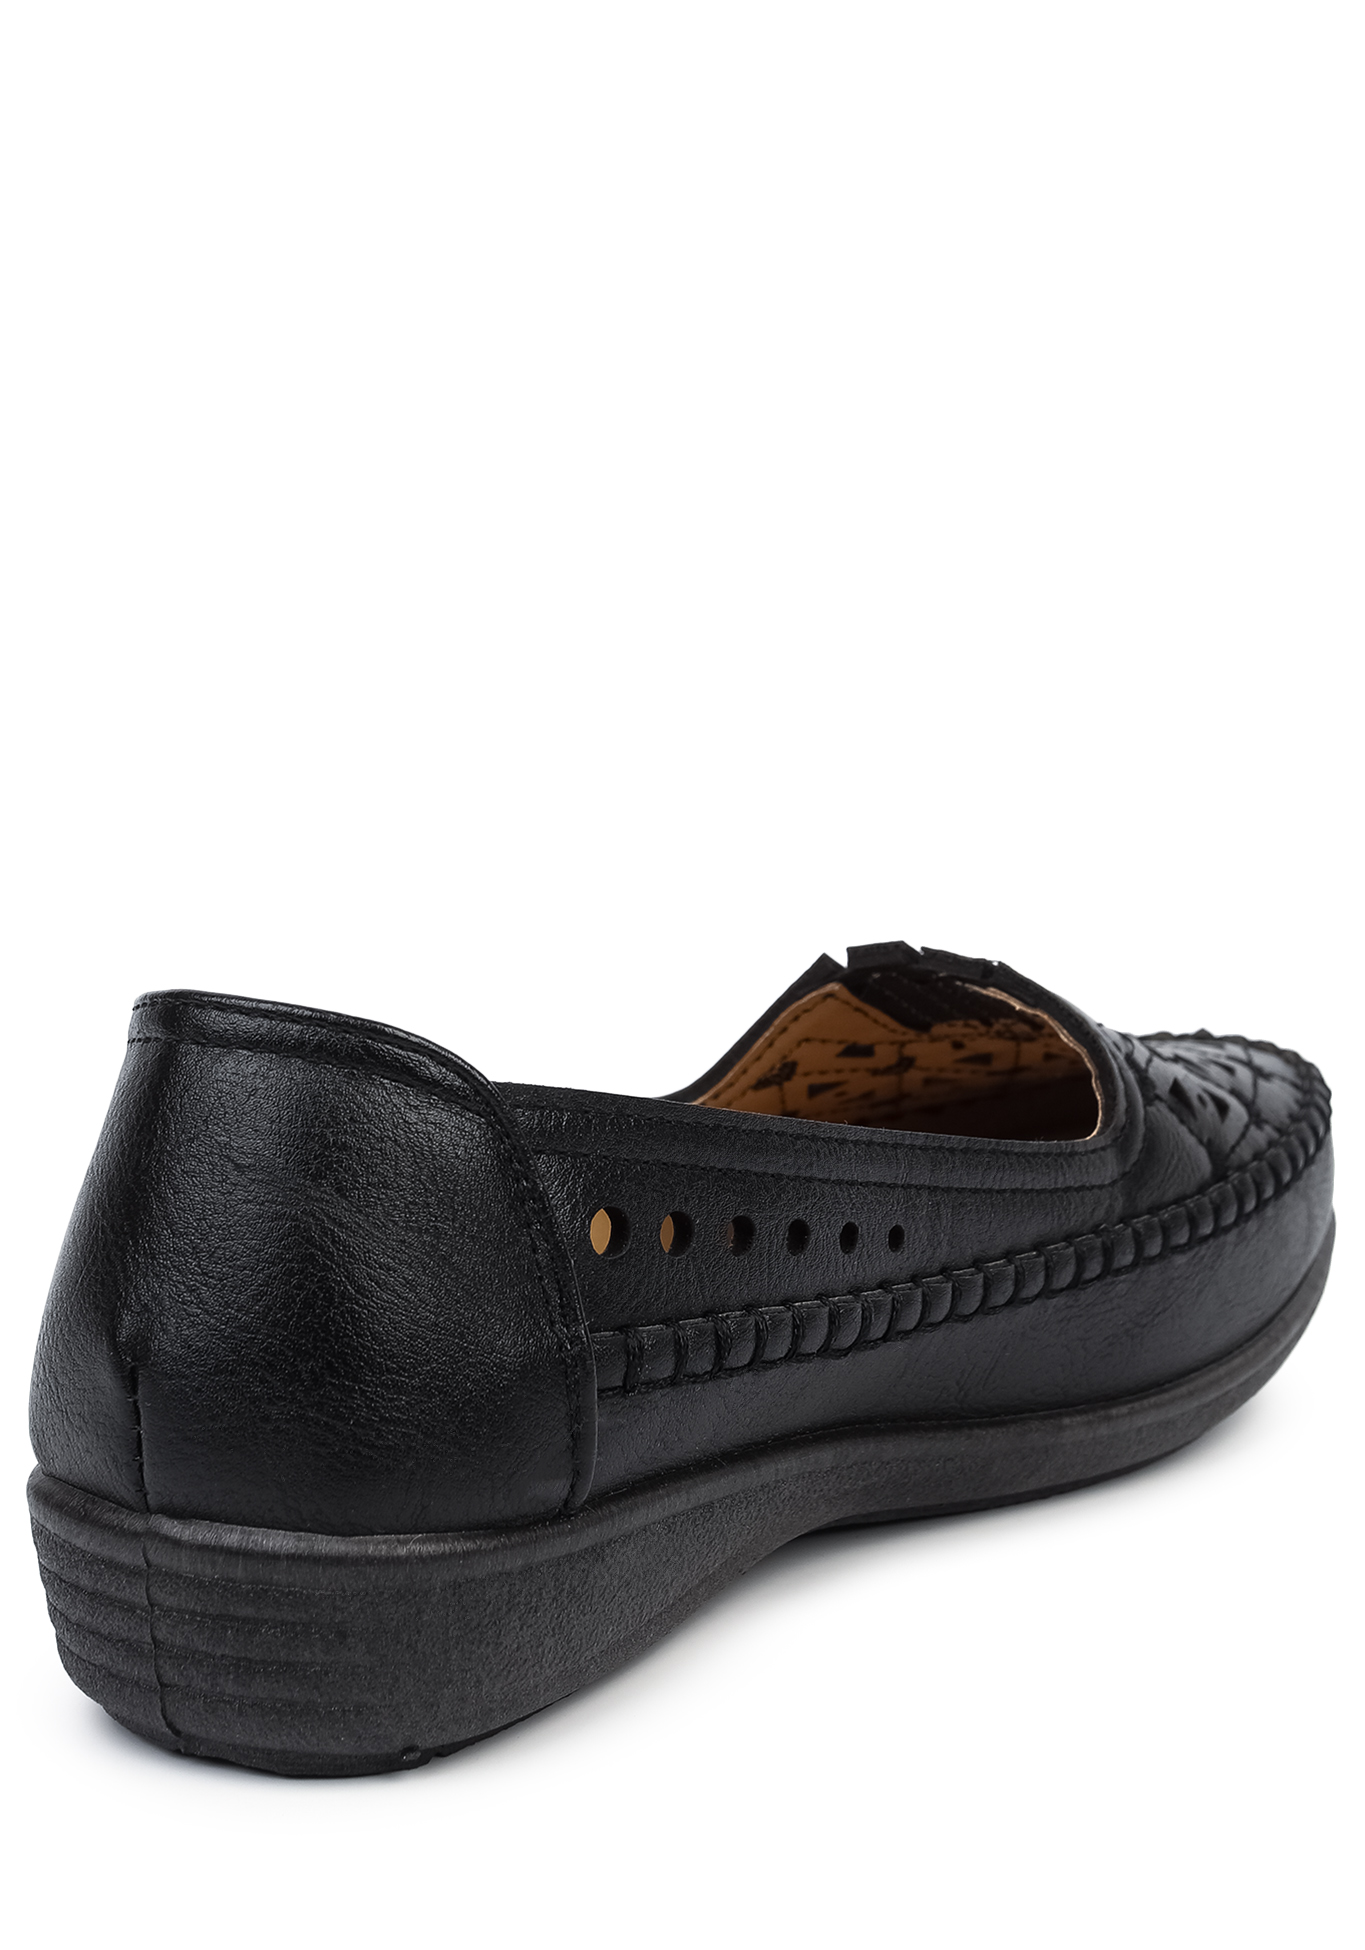 Туфли летние женские "Лилия" САЗ, размер 37, цвет черный - фото 7